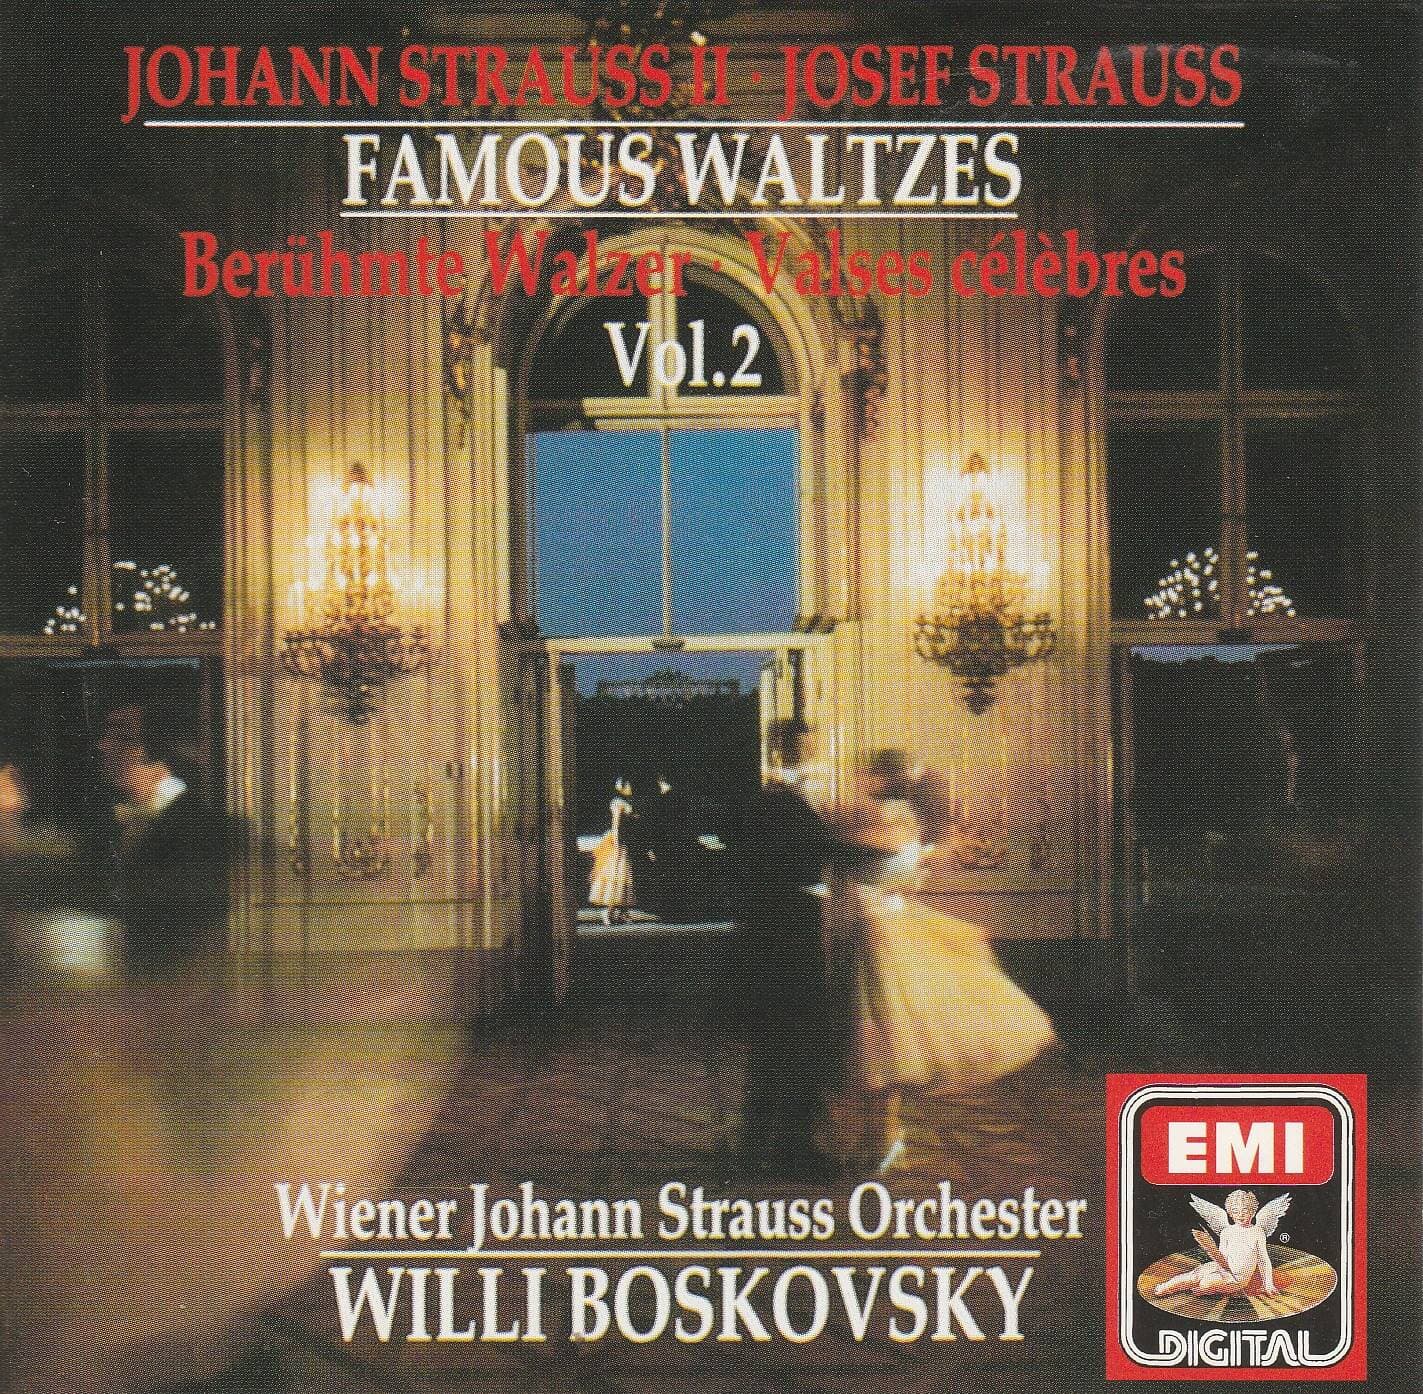 waltzes by johann & Josef Strauss willi boskovsky